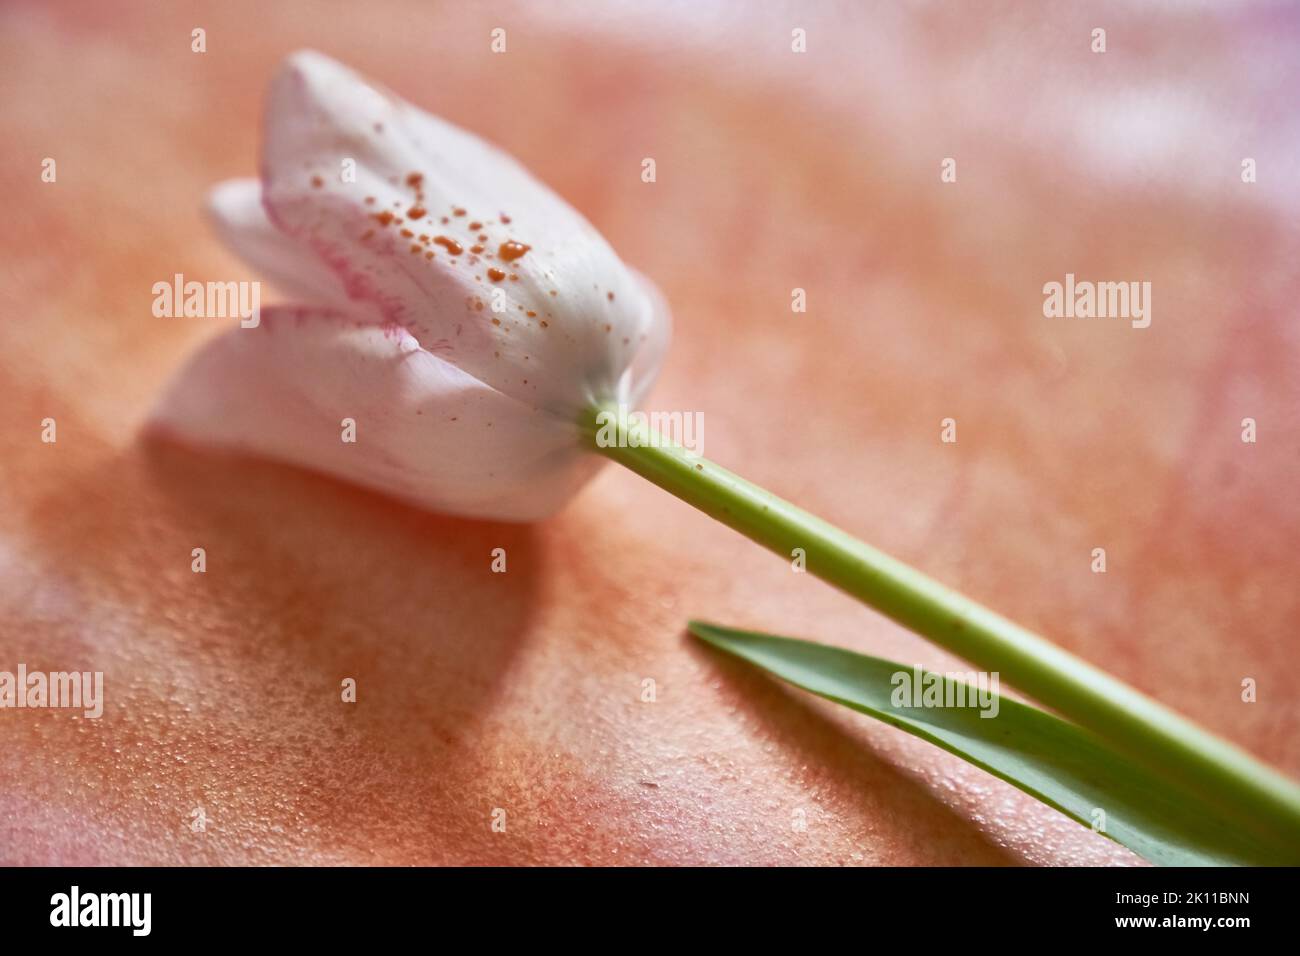 Un tulipano bianco con gocce di vernice giace su una carta dipinta con acquerello arancione. Un elegante tulipano per il tuo design. Foto di alta qualità Foto Stock